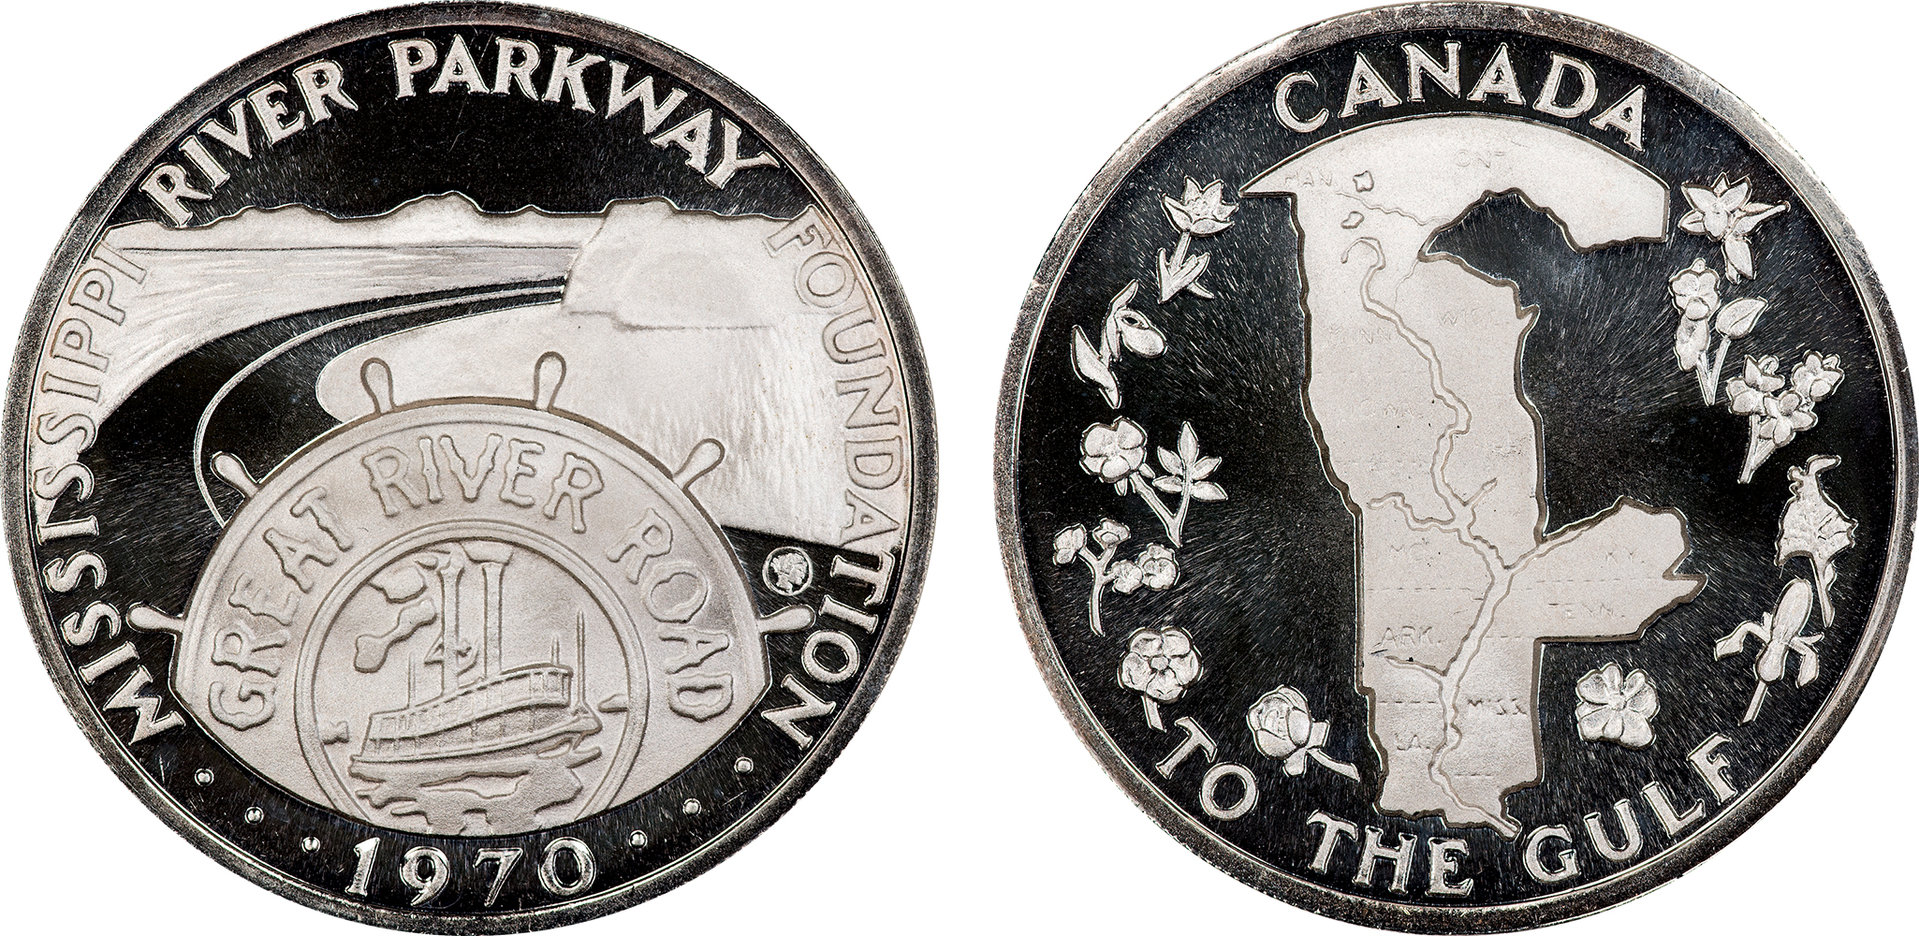 1970 Mississippi River Parkway Silver Medal.jpg